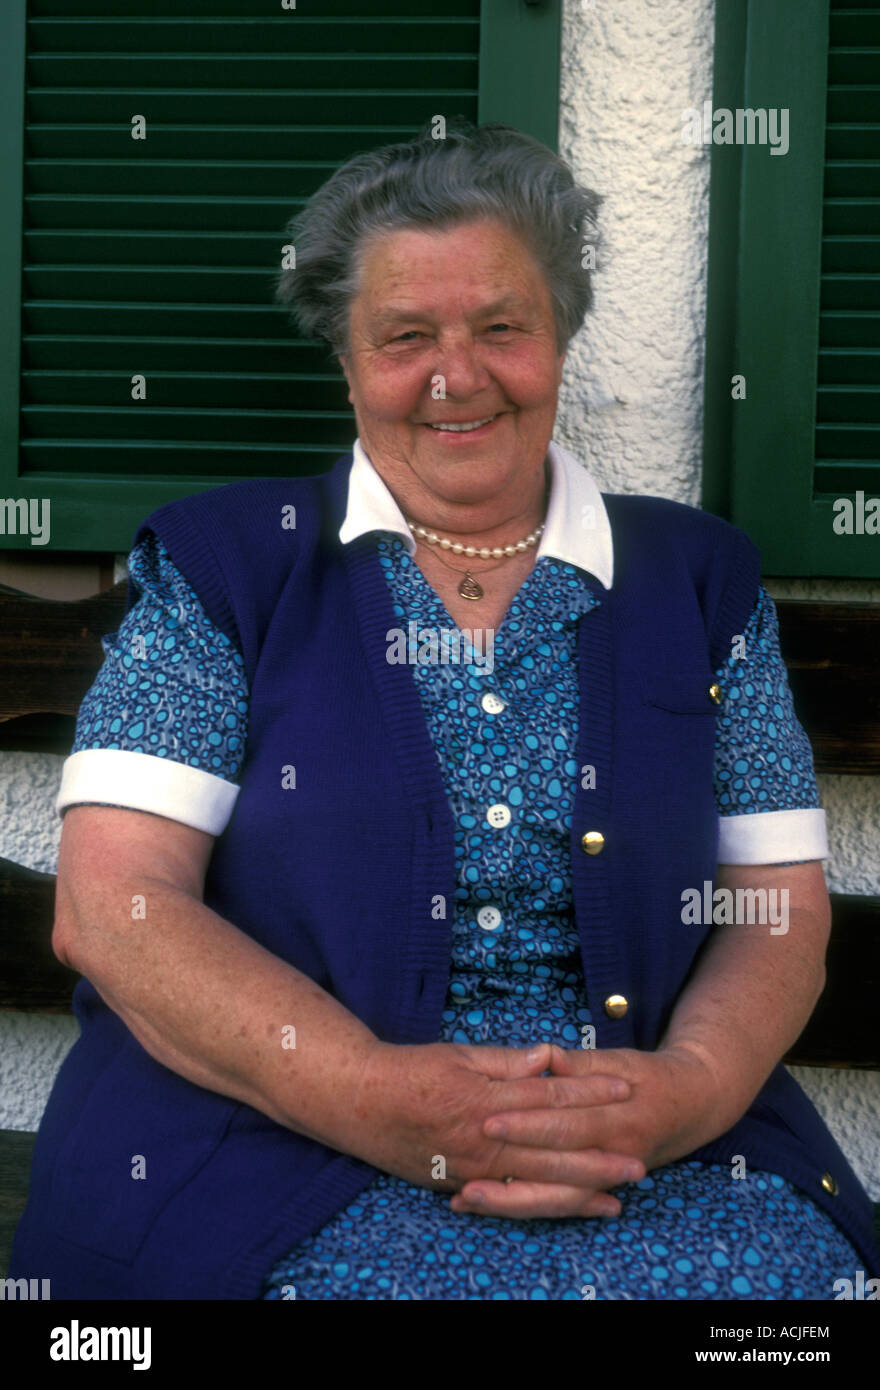 1 eine deutsche Volk Person weiblichen Erwachsenen Reife senior Seniorin  lächelnd Stadt Garmisch-Partenkirchen Bayern Deutschland Stockfotografie -  Alamy